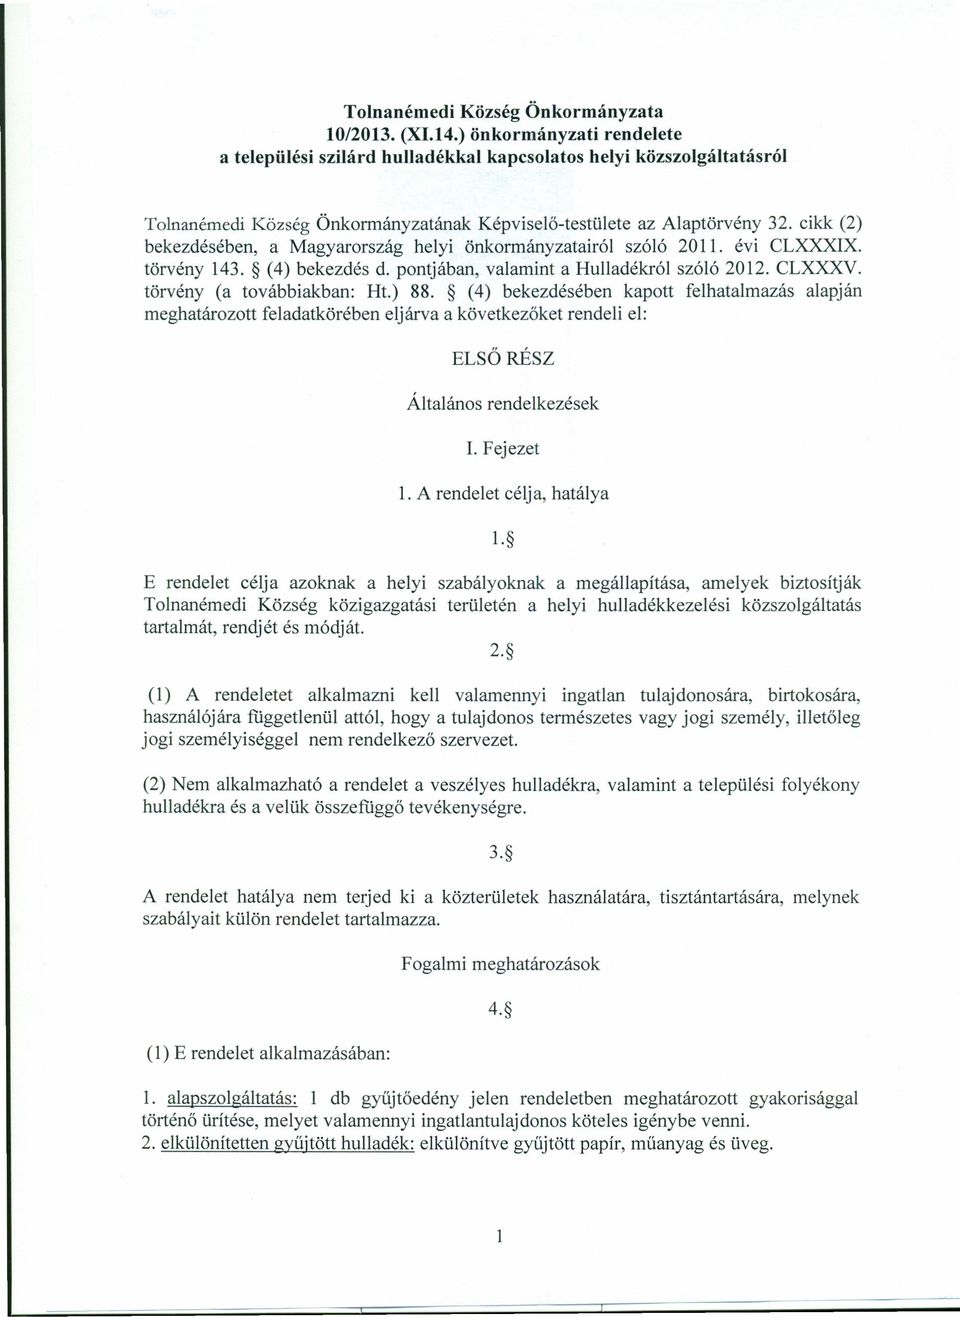 cikk (2) bekezdésében, a Magyarország helyi önkormányzatairól szóló 2011. évi CLXXXIX. törvény 143. (4) bekezdés d. pontjában, valamint a Hulladékról szóló 2012. CLXXXV. törvény (a továbbiakban: Ht.